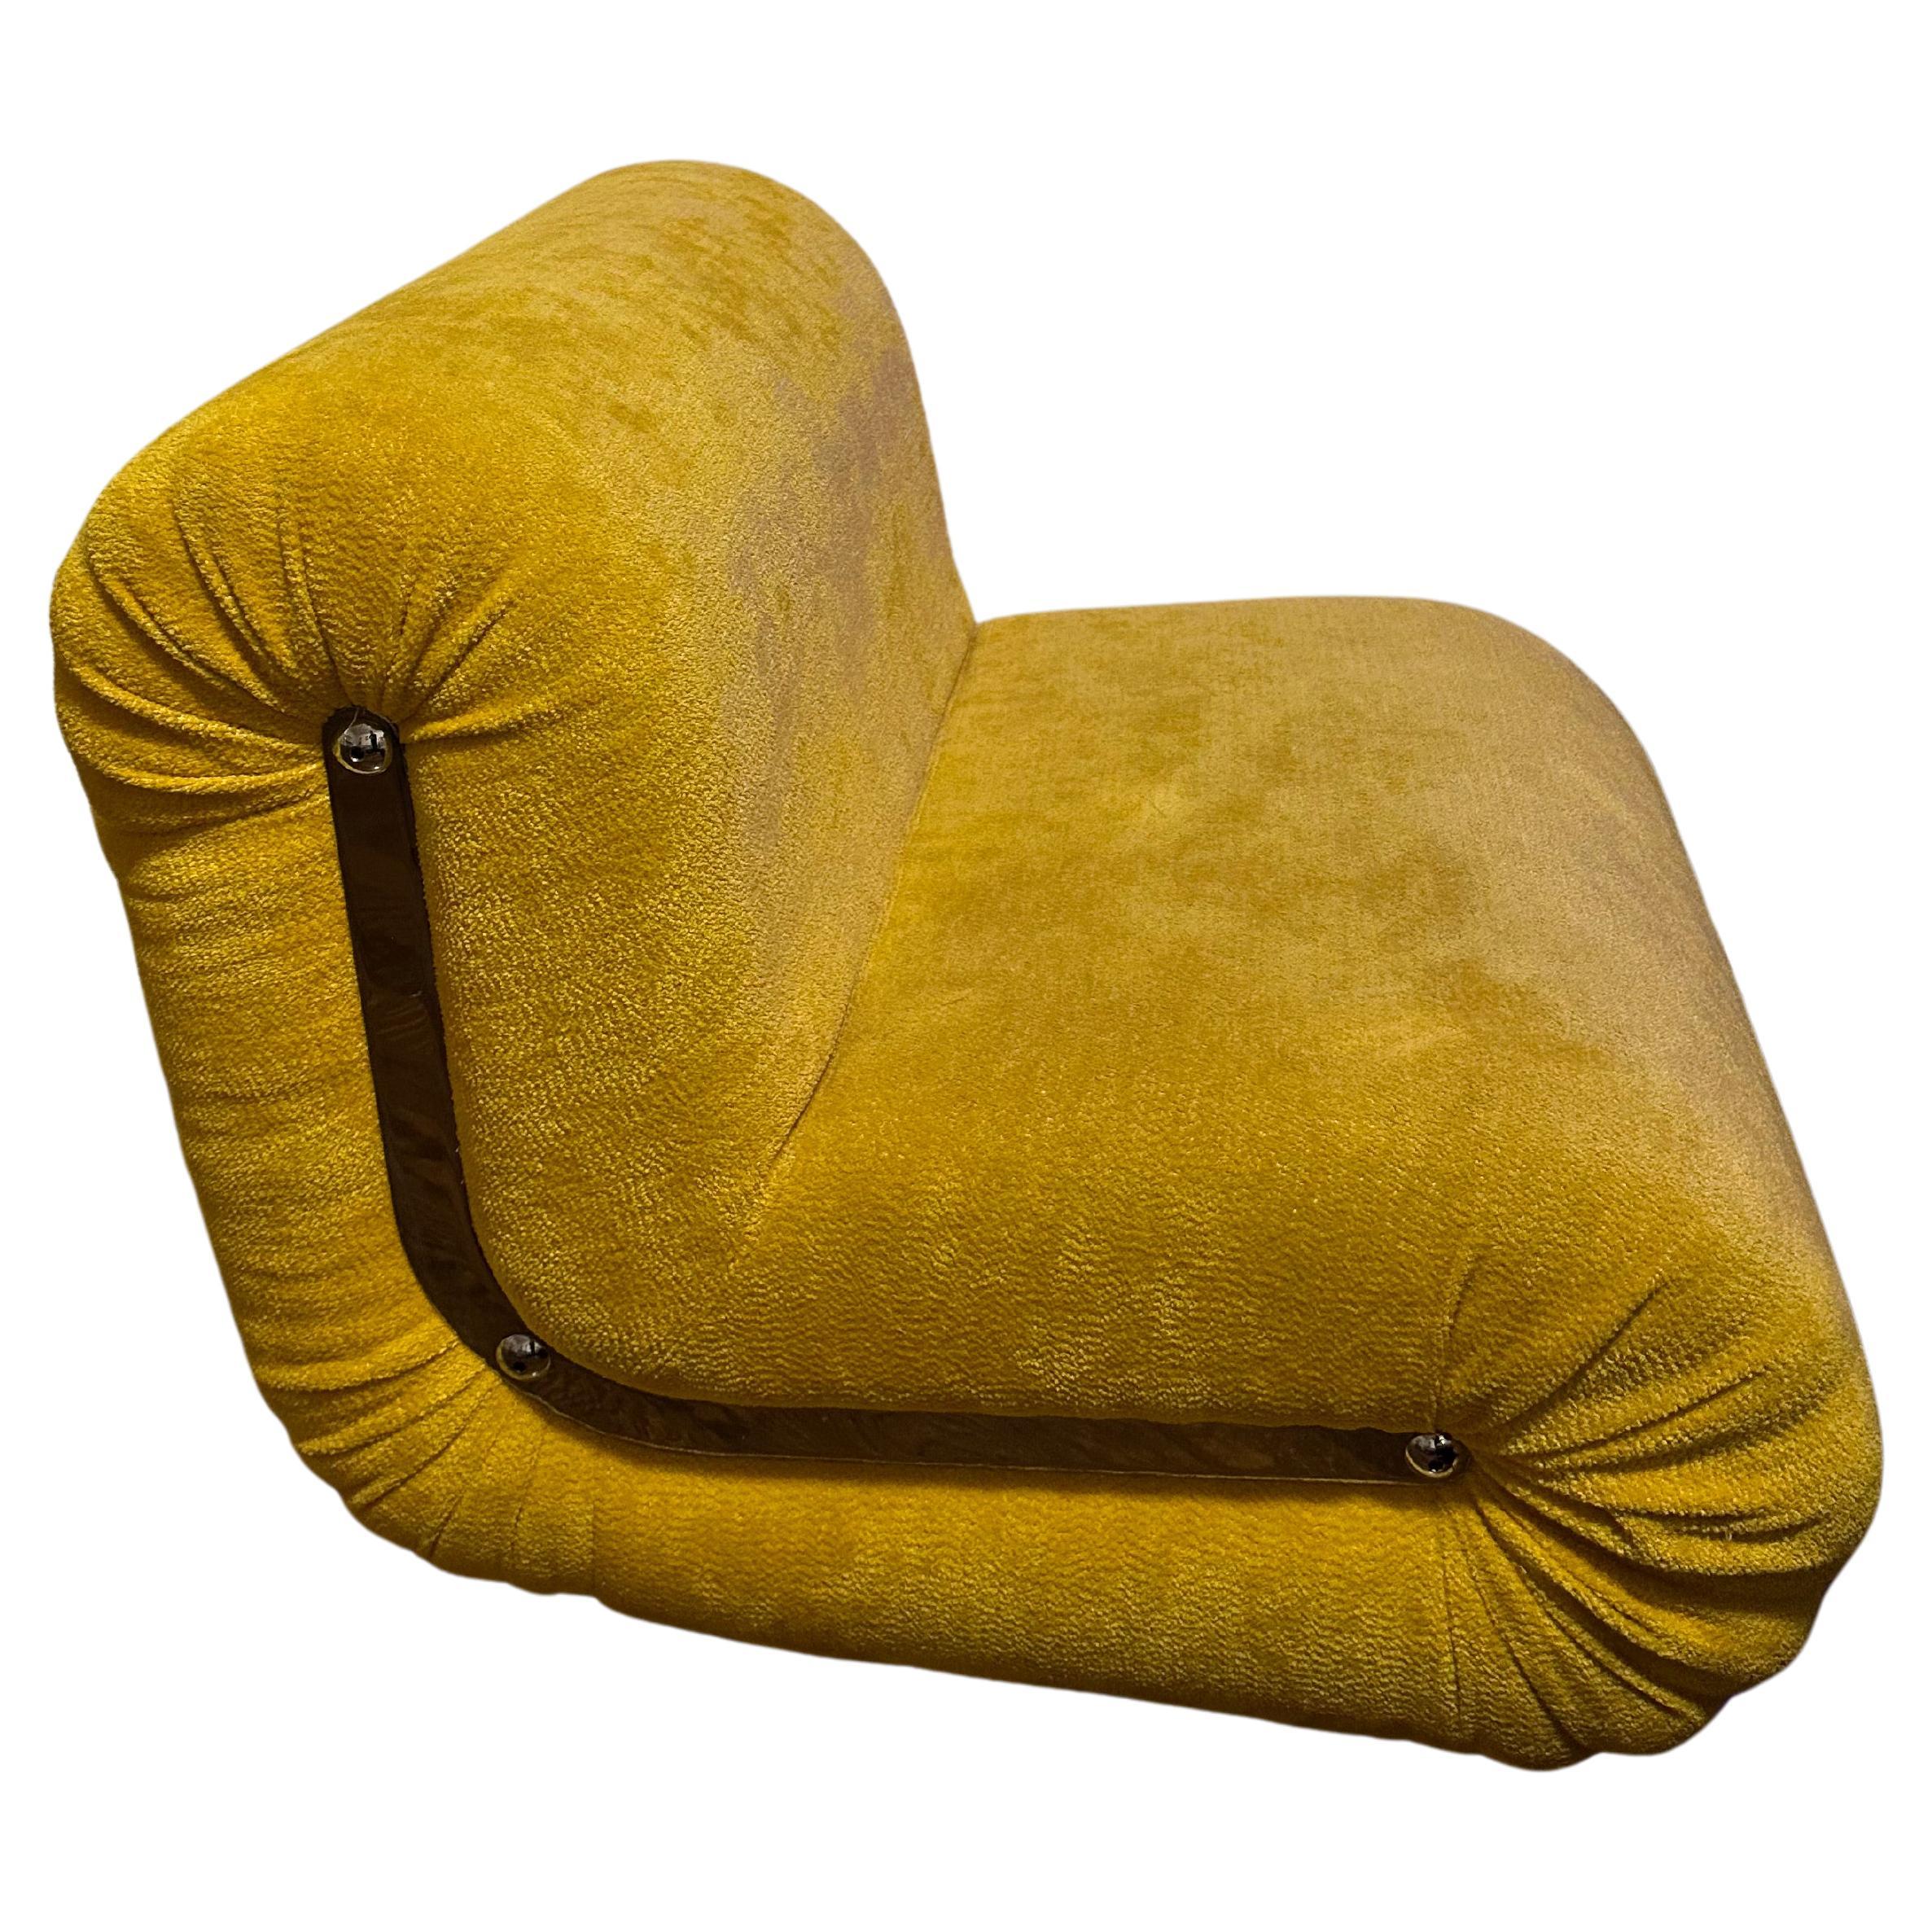 BOOMERANG- Design de Rodolfo Bonetto, 1968

Fauteuil Boomerang jaune soleil, apporterait une ambiance lumineuse et ensoleillée à n'importe quelle pièce instantanément, extrêmement confortable et compact, a une poche sur le dos, en excellent état